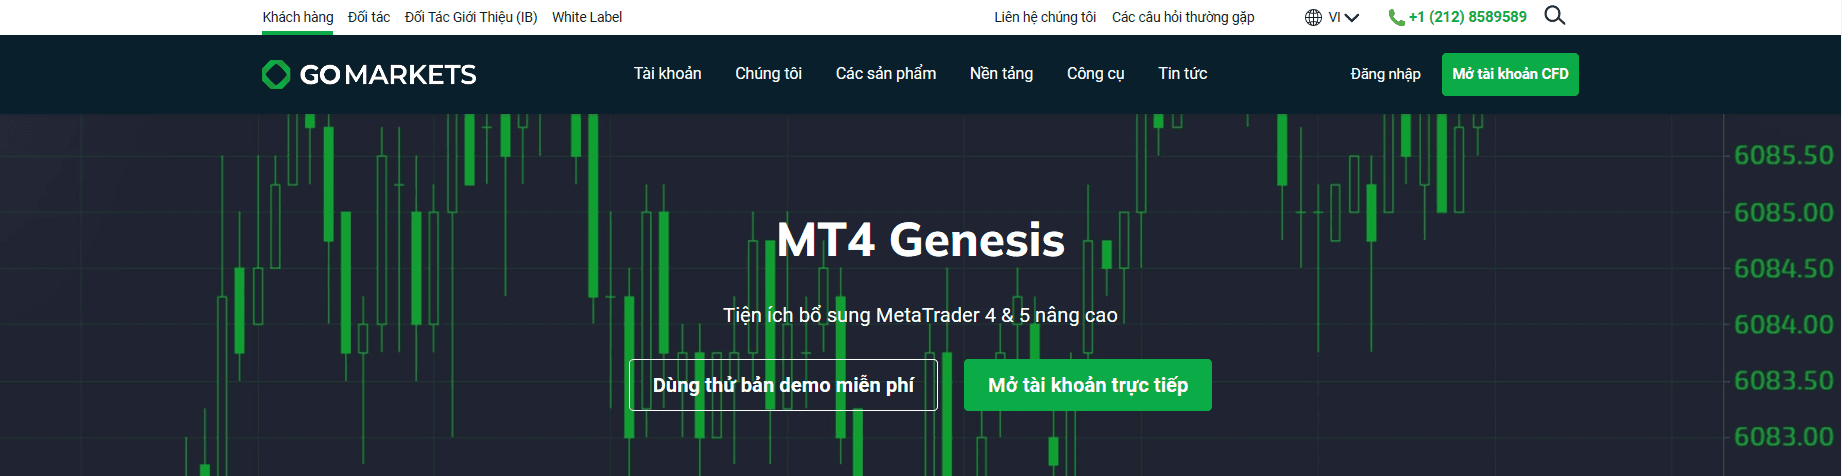 Nền tảng giao dịch GO Markets MT4 Genesis